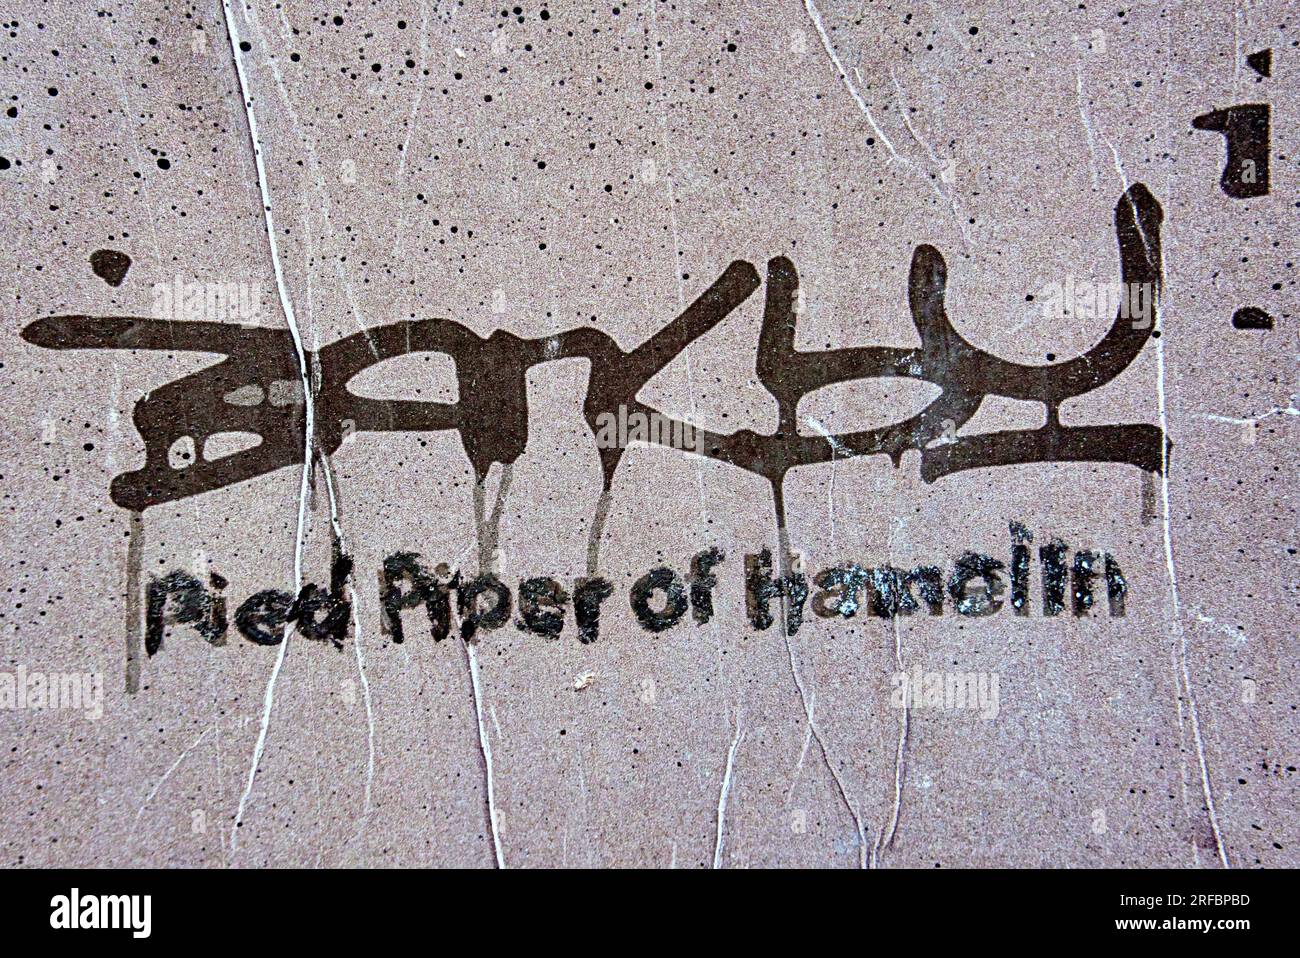 Glasgow, Écosse, Royaume-Uni 2 août 2023 pied Piper de Hamelin par . Espagnol Banksy connu sous le nom de garçon de télévision rôtit héros dans une peinture murale comme le Piper pied mène rats étiqueté d'après les maisons de vente aux enchères qui vendent l'art Banksy Crédit Gerard Ferry/Alamy Live News Banque D'Images